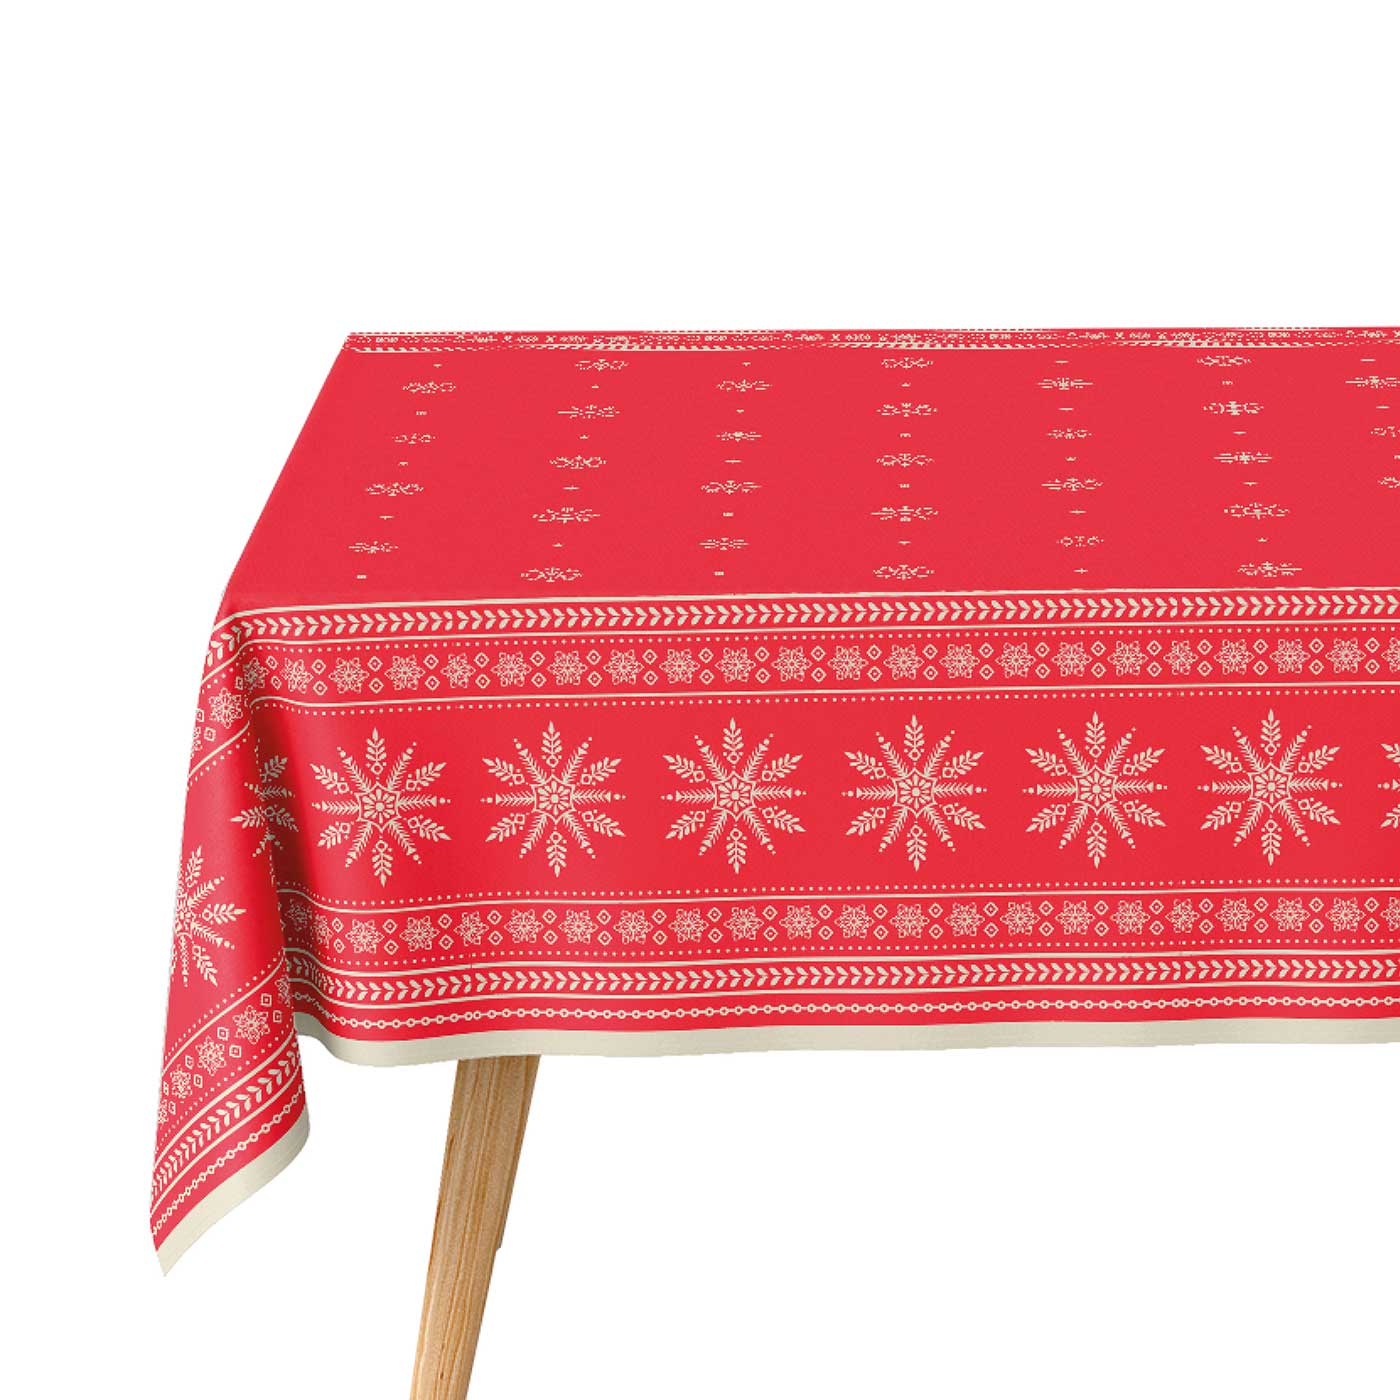 Rollo Mantel Navidad Copo de Nieve 1,20 x 2,50 m Rojo